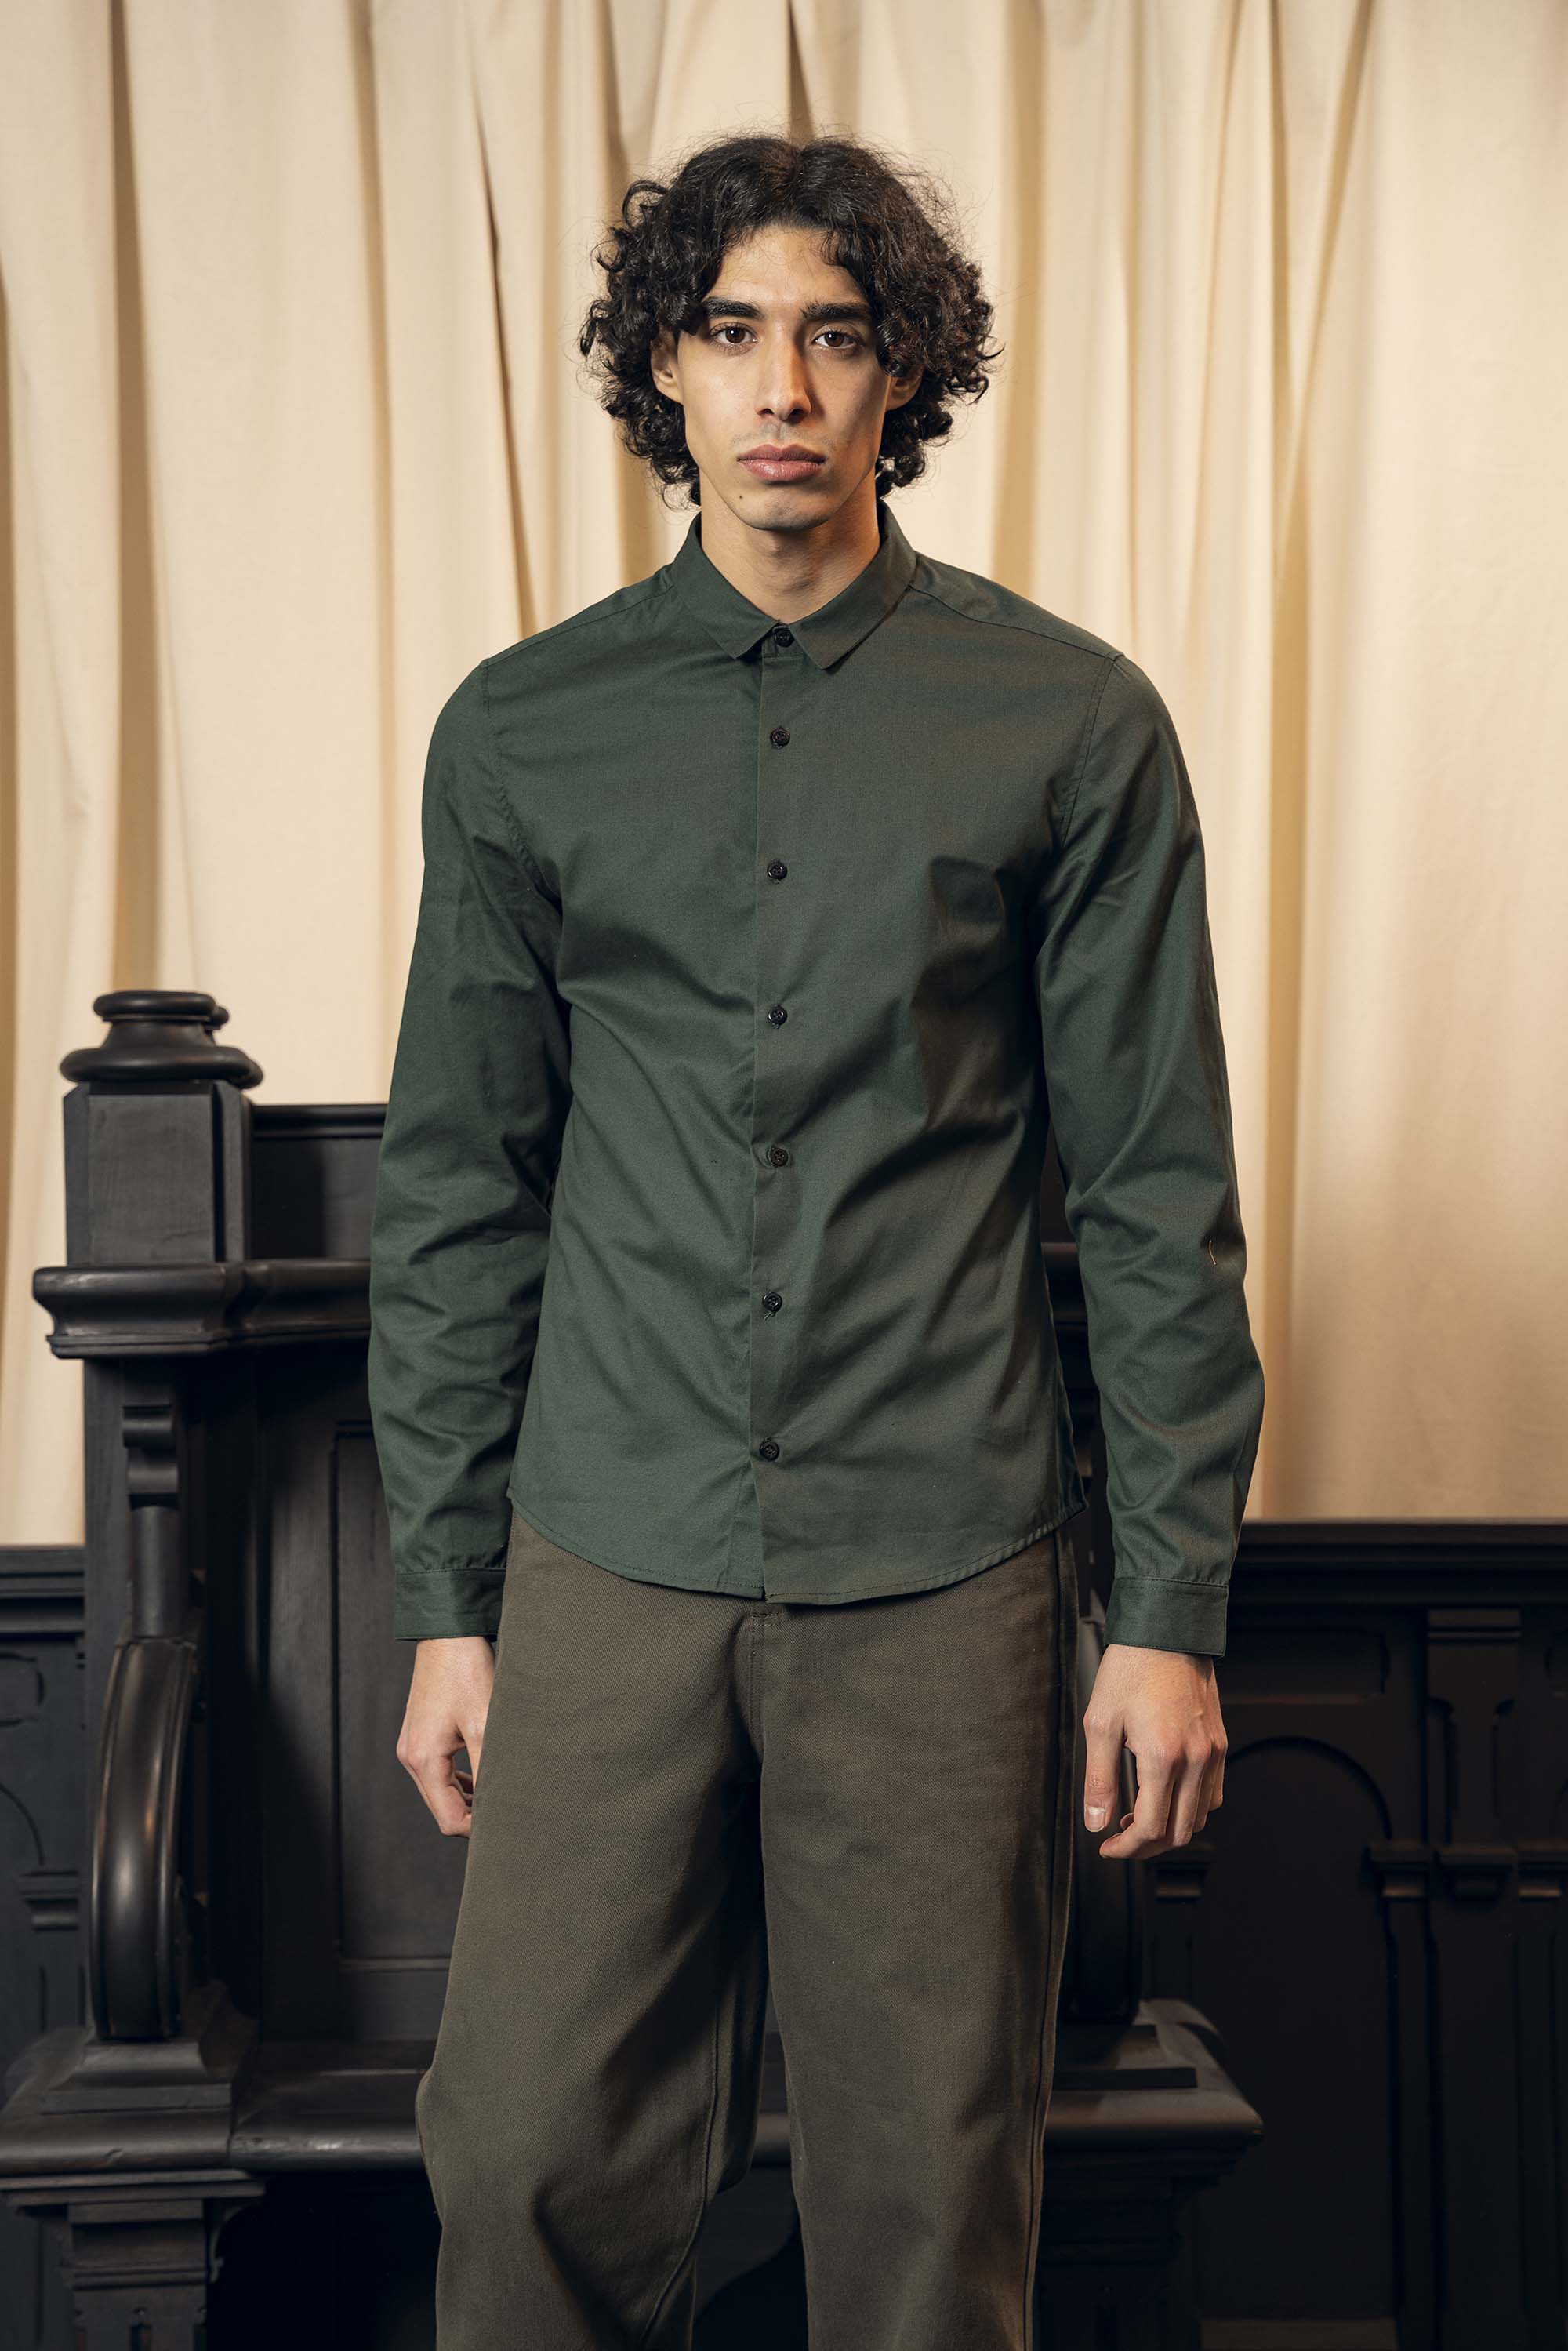 Chemise Farfan Vert Foncé slim fit, ajustée, chic et élégante, chemise mode fashion commerce équitable